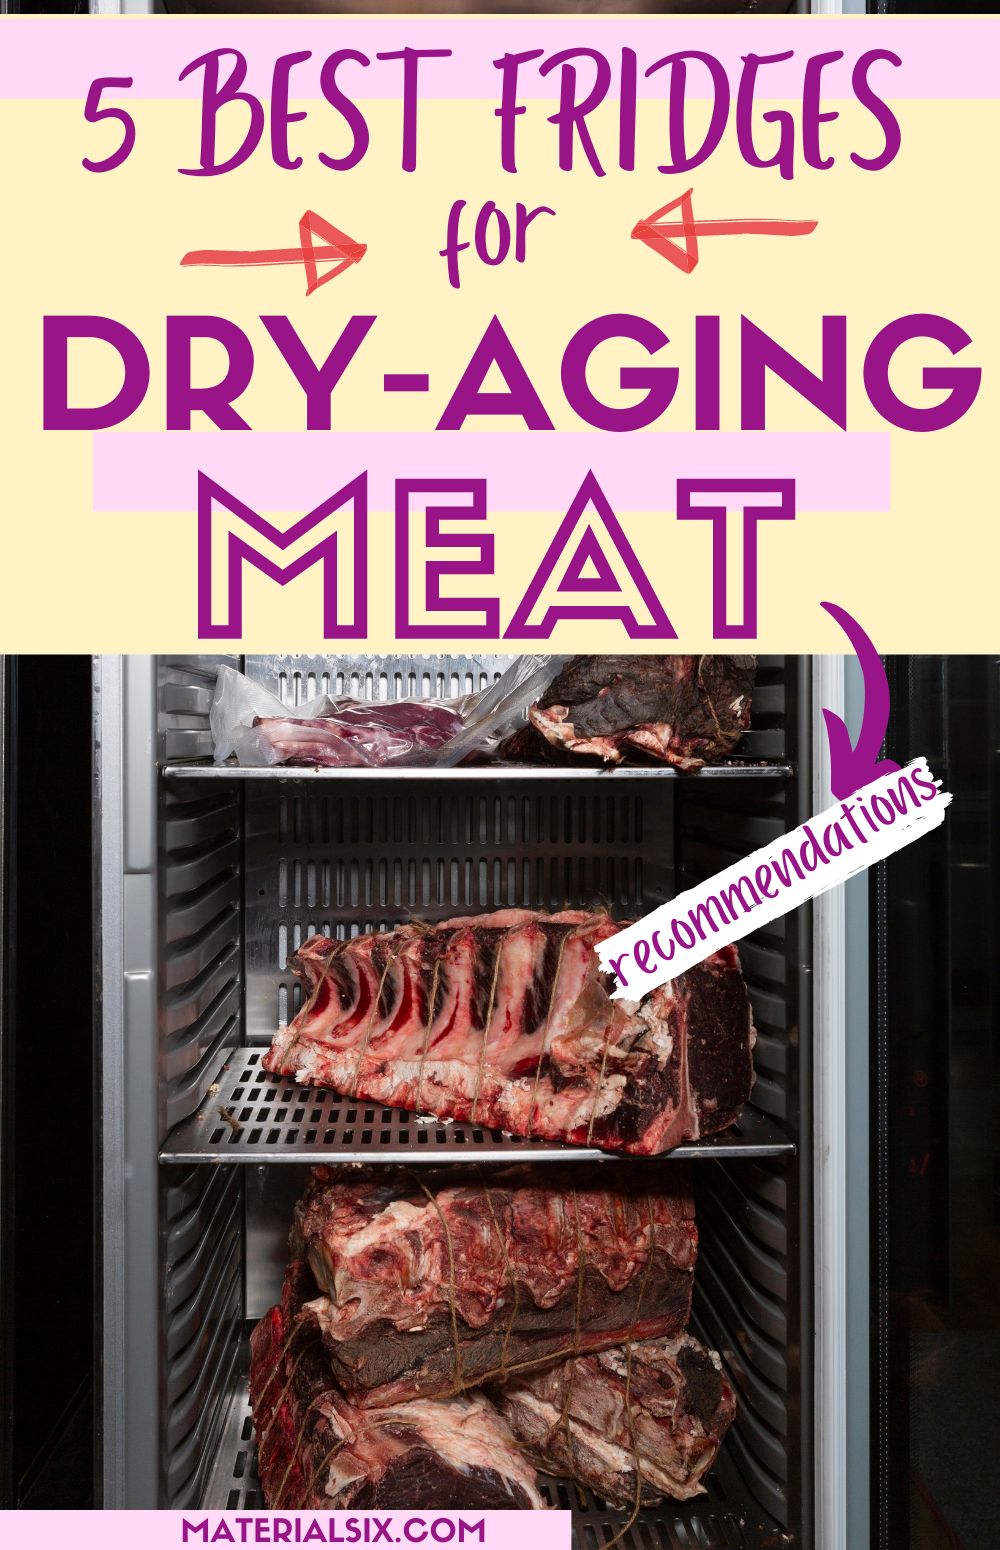 Best Fridge for Dry Aging Meat (Top 5 Picks)